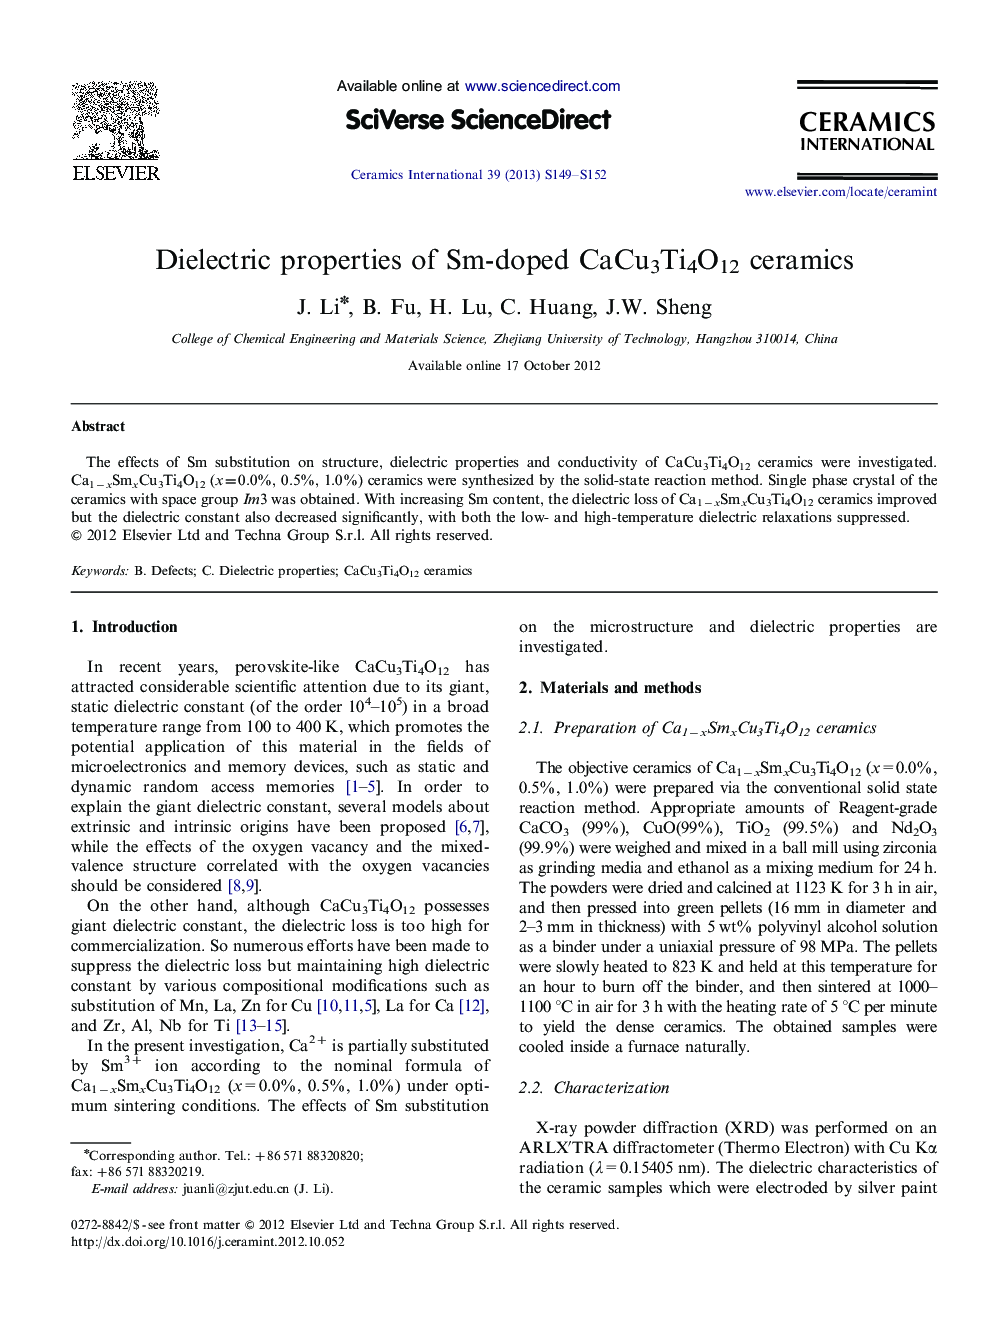 Dielectric properties of Sm-doped CaCu3Ti4O12 ceramics